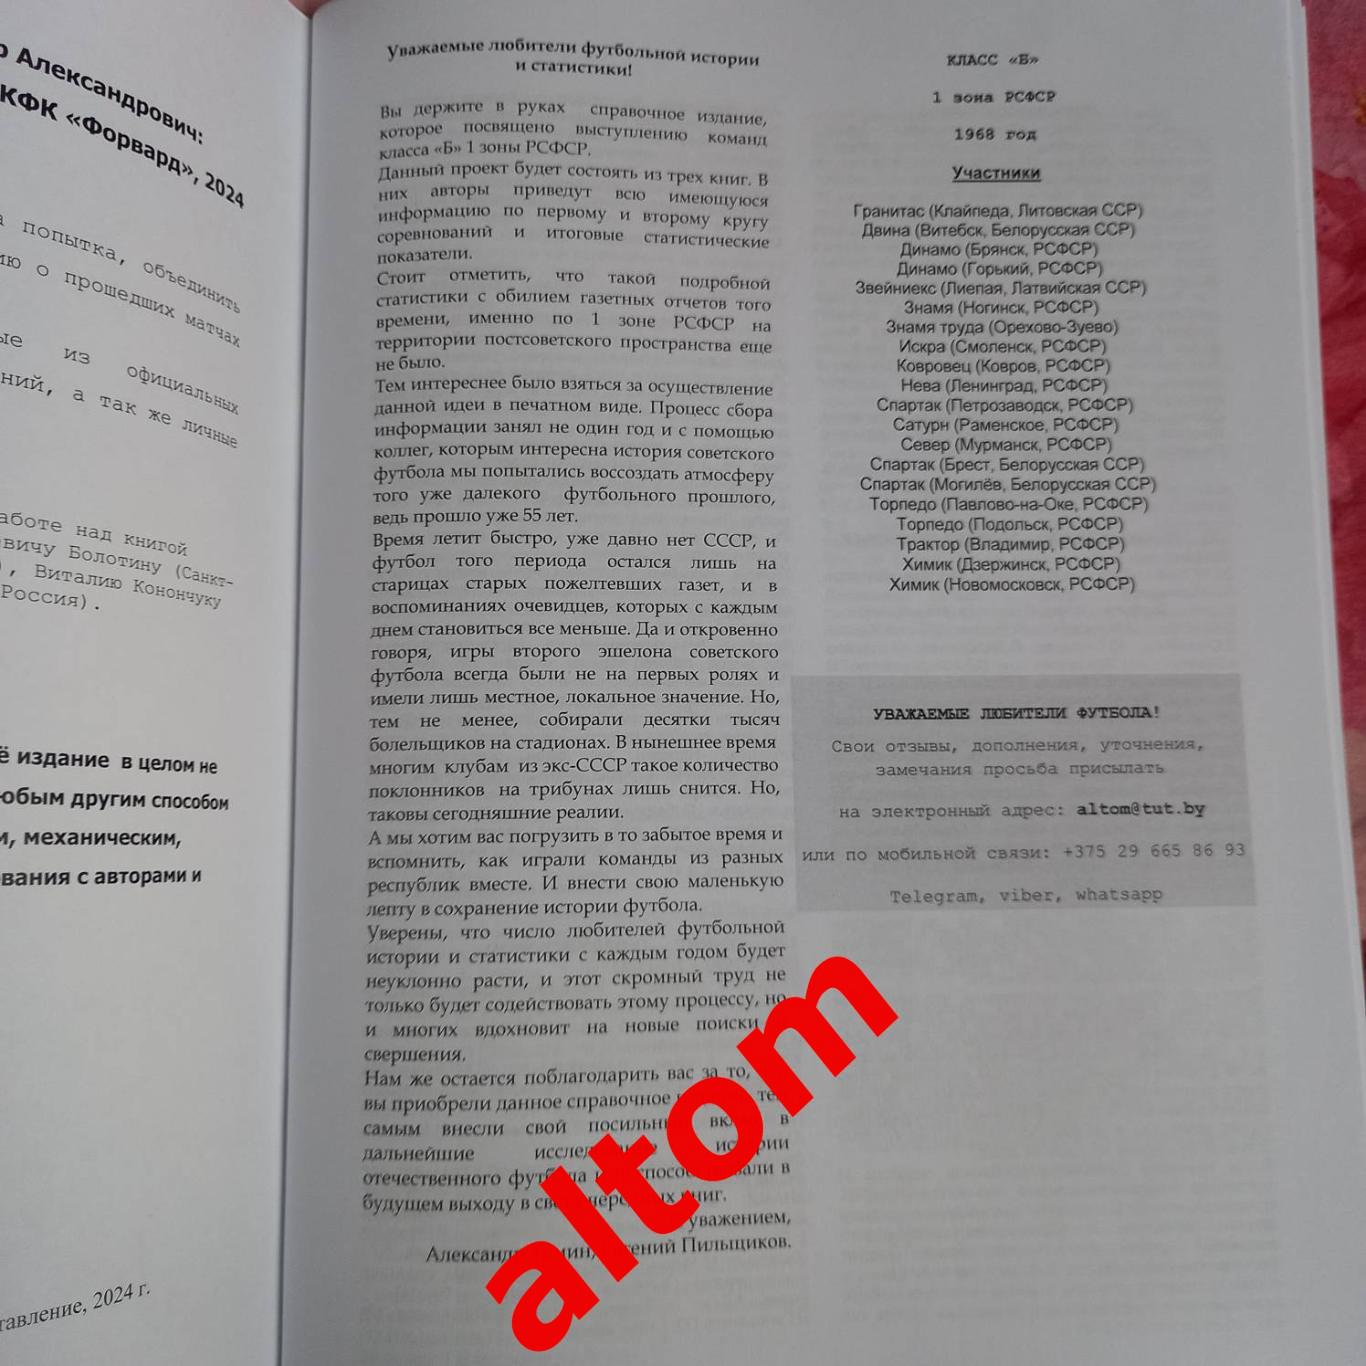 1968 первая зона РСФСР. Все протоколы и отчеты. Часть 2, 2024. Формат А4, 84 стр 1